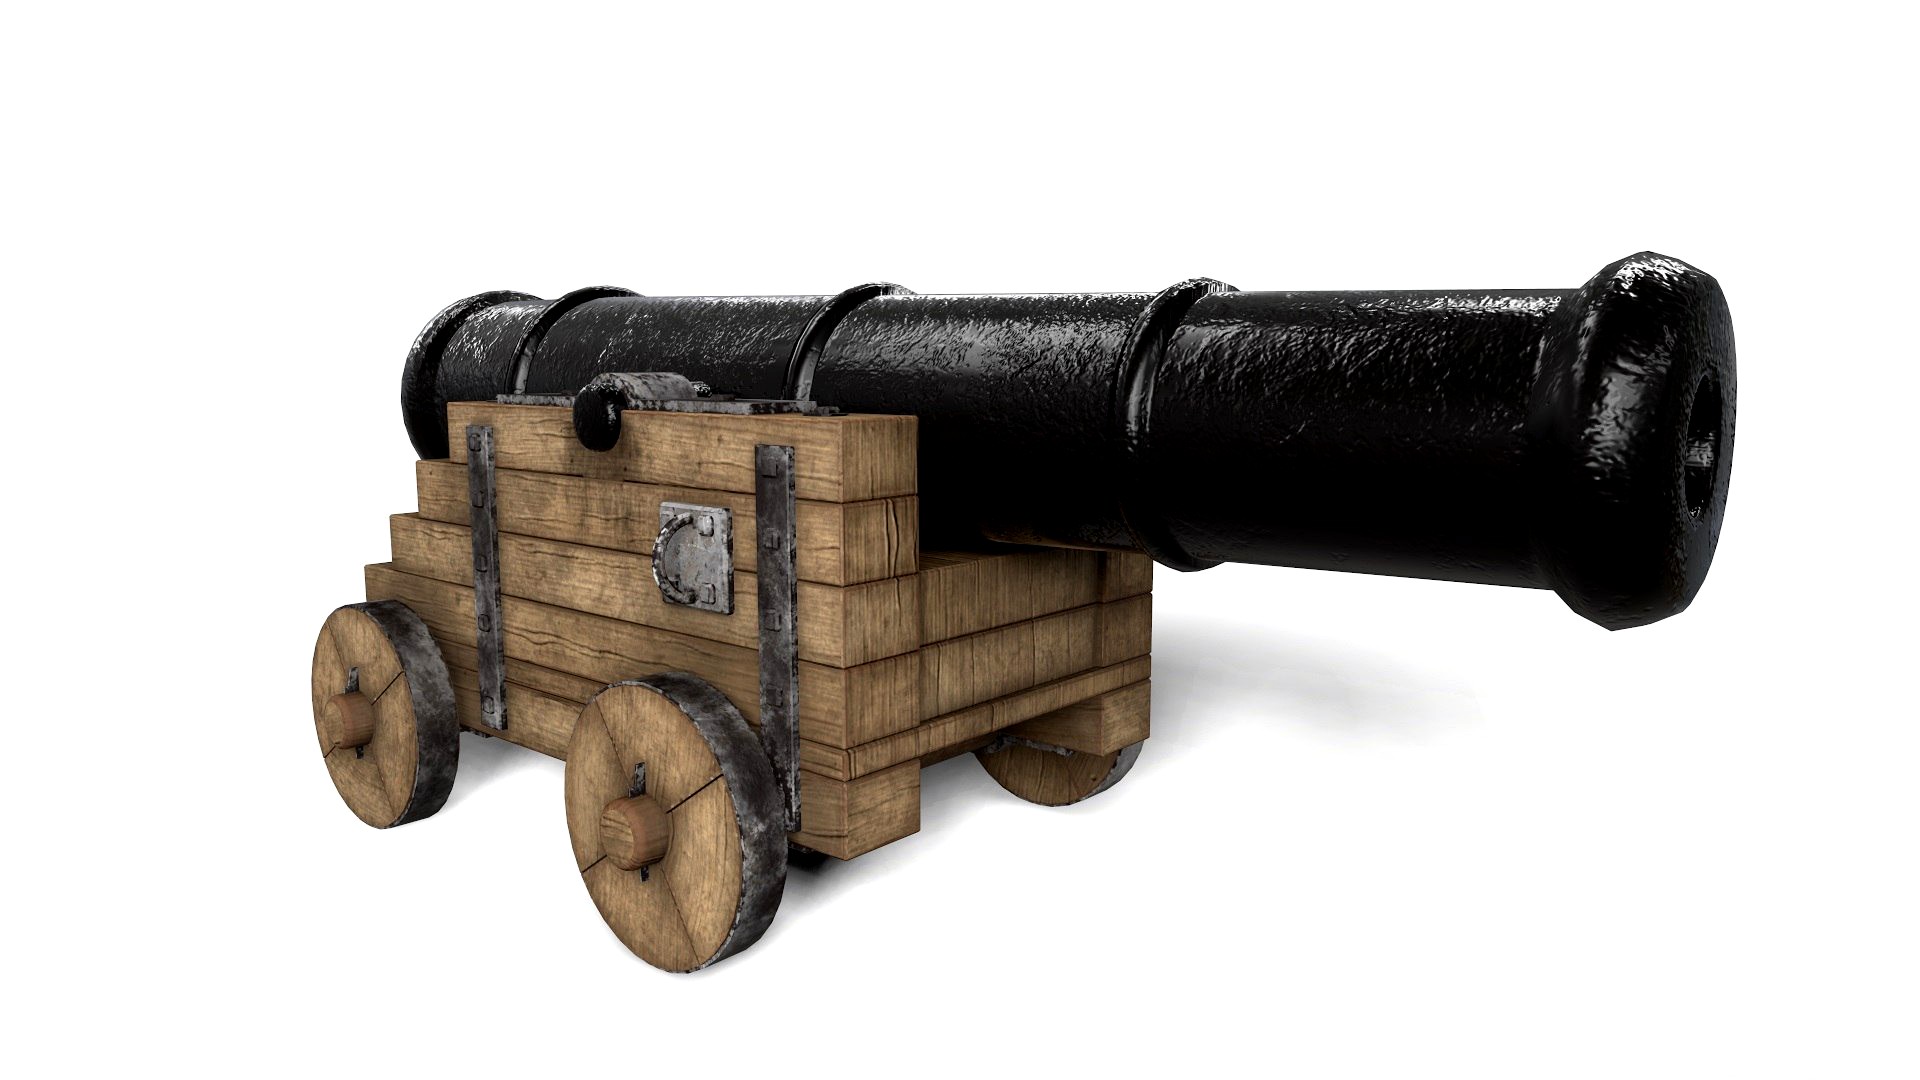 Antique Cannon - Pirate Cannon